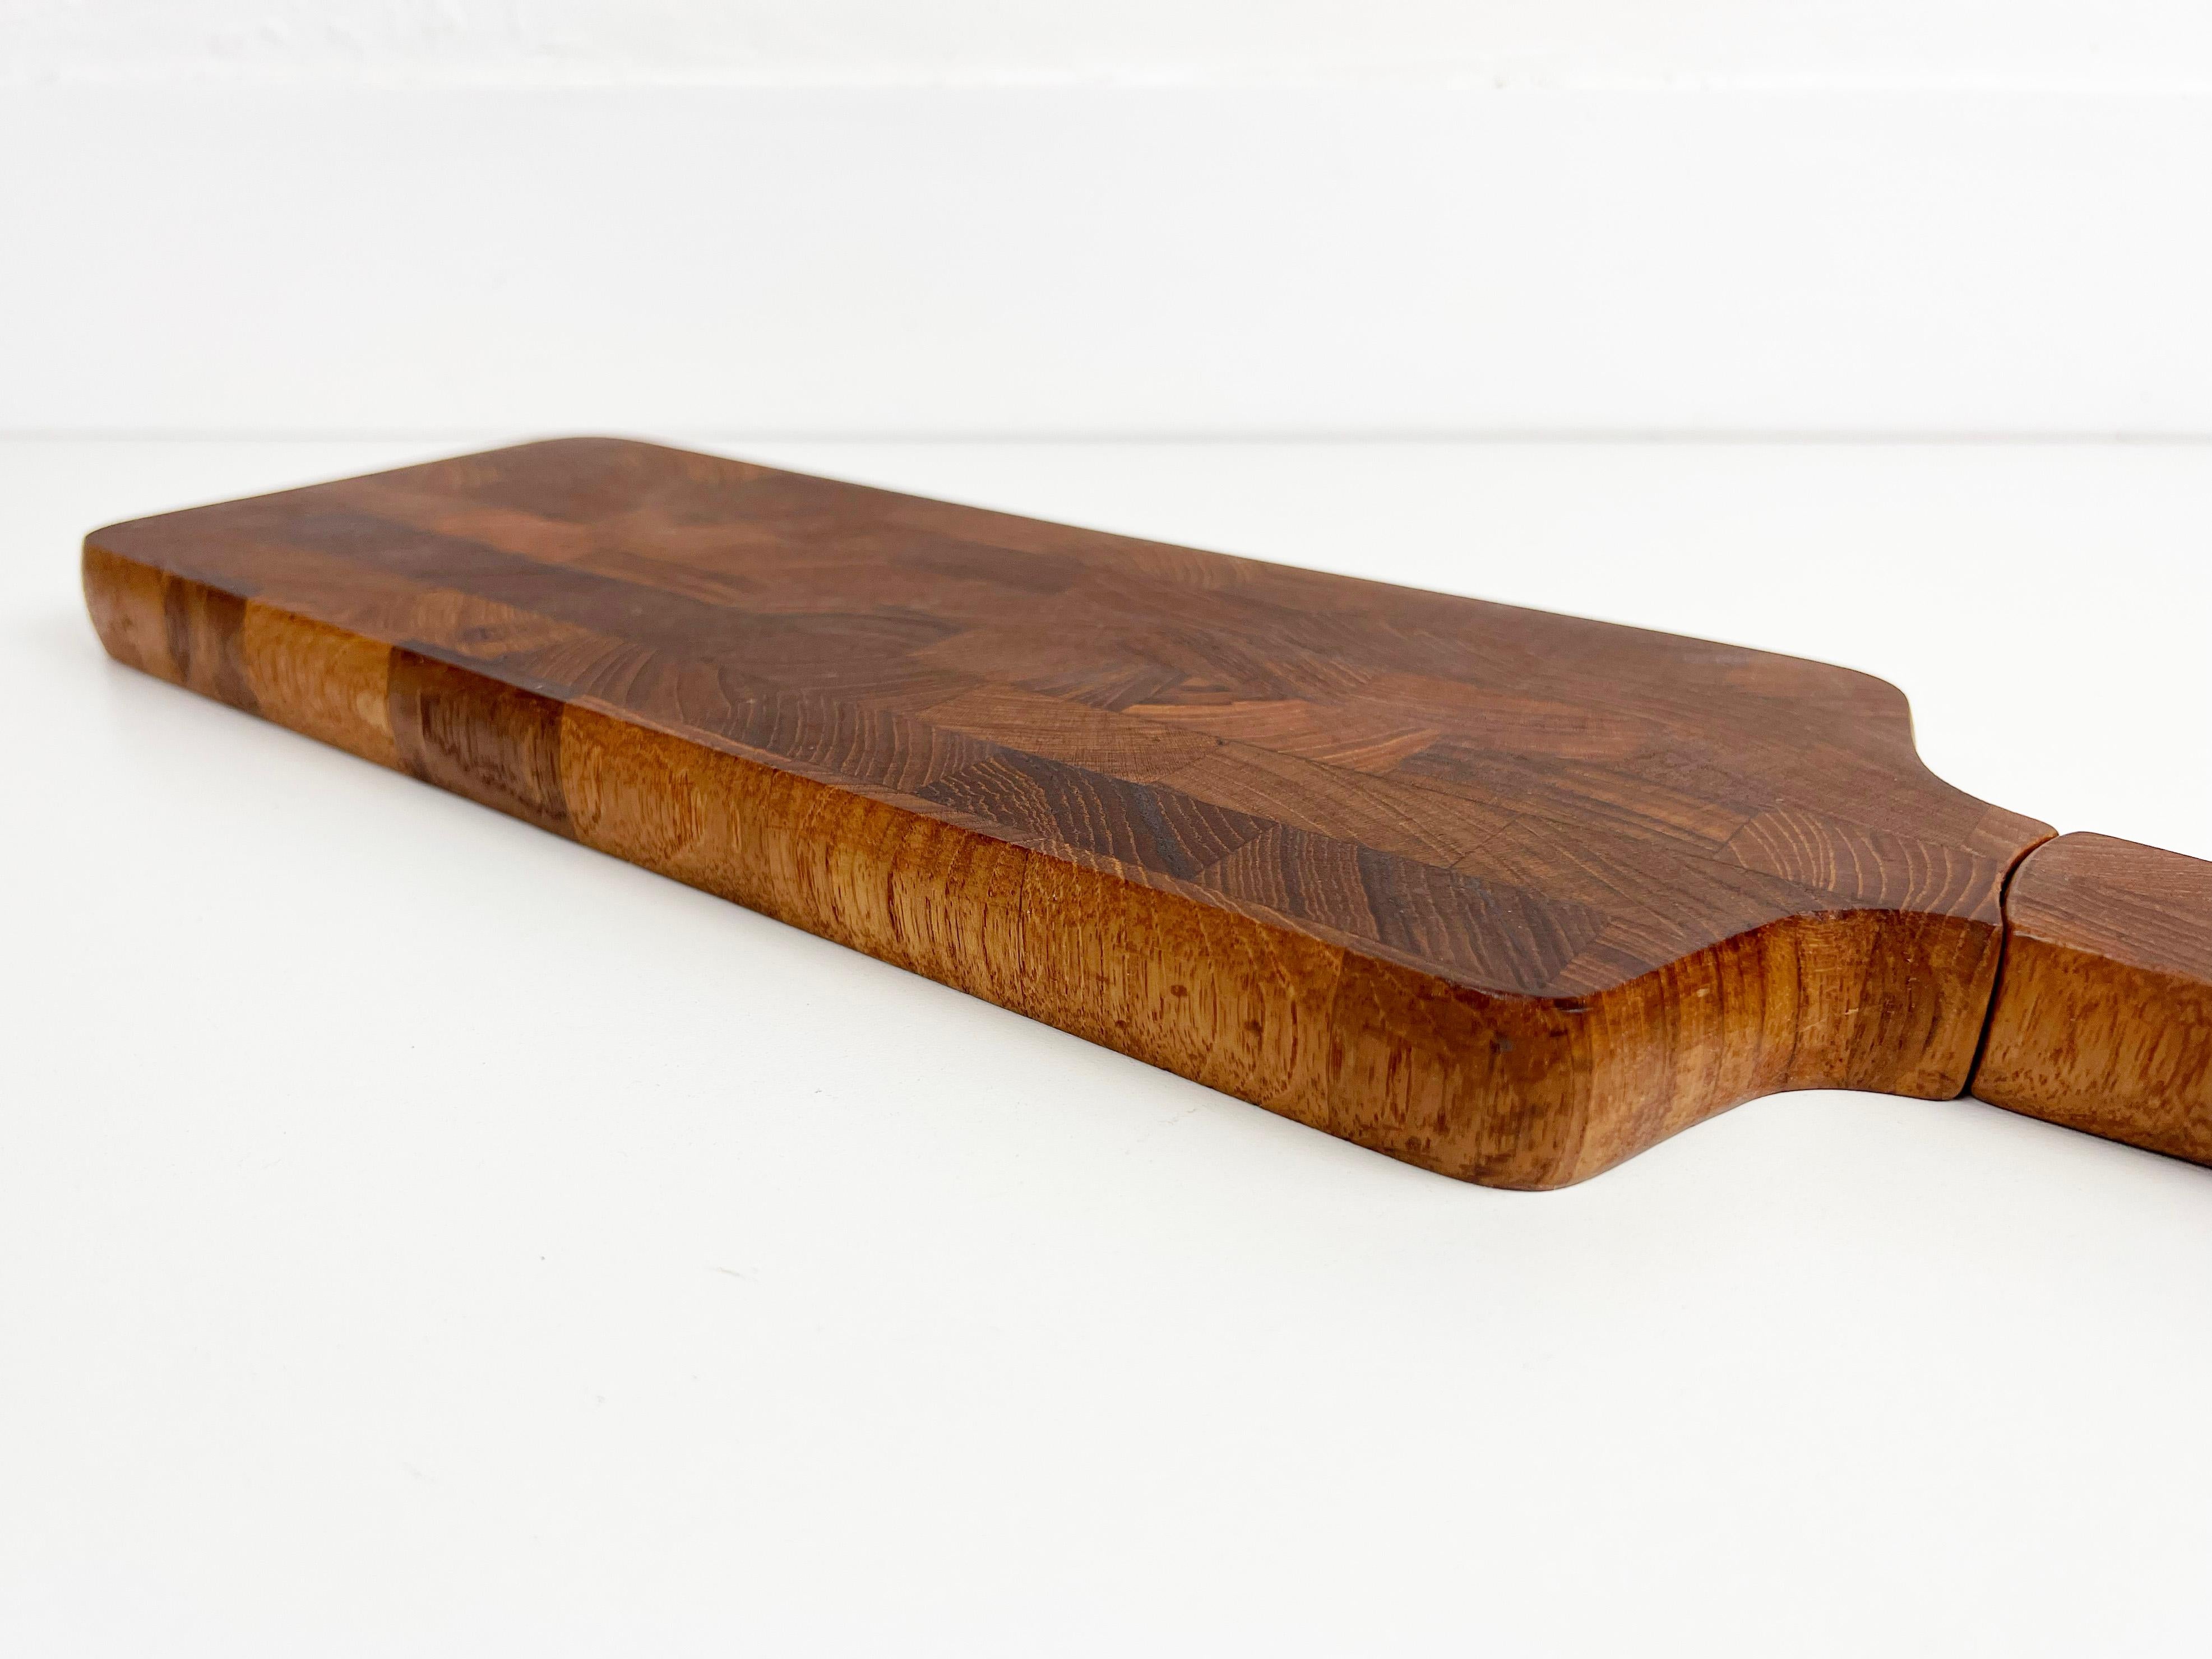 Dansk End Grain Teak Paddle Shaped Serving Board with Built in Knife For Sale 1